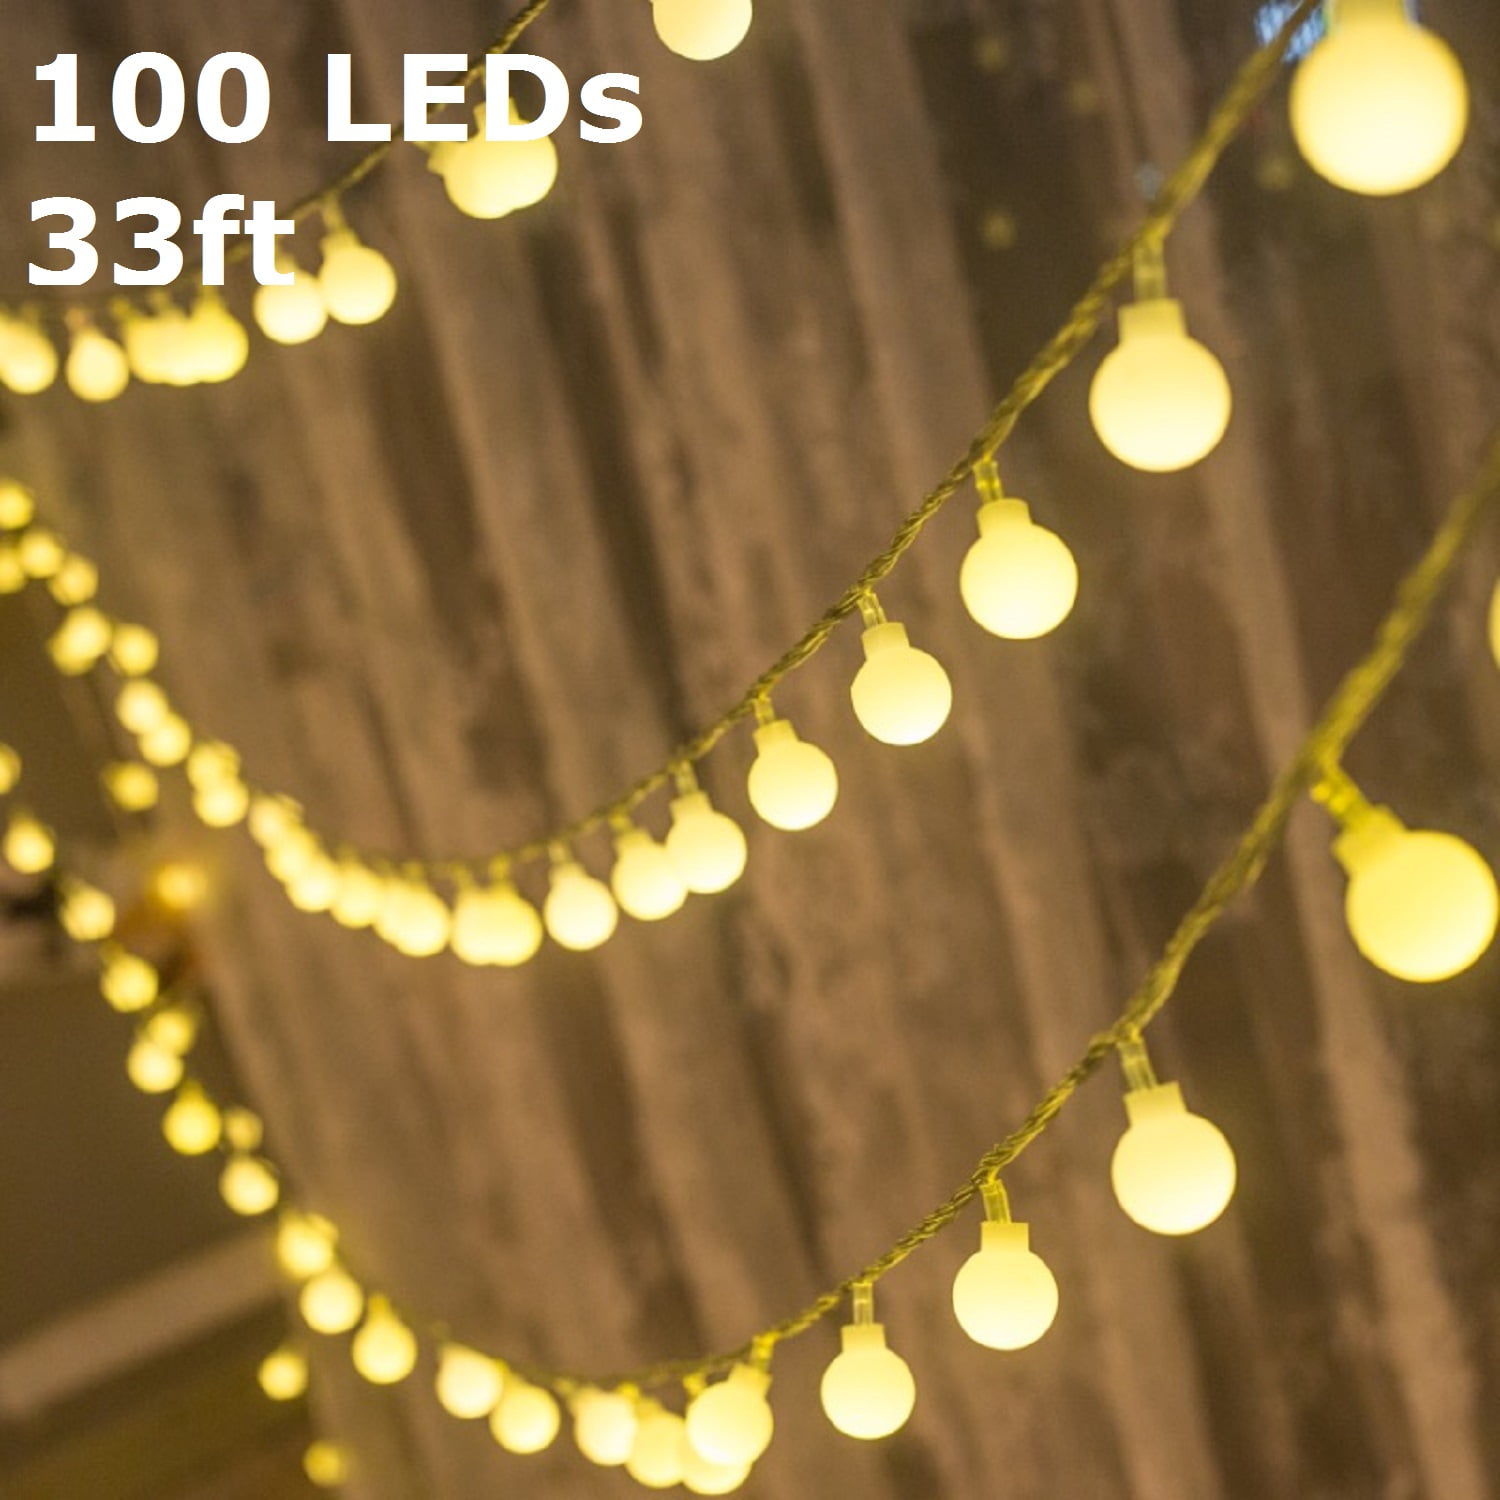 Star String Lights 100 LED Plug in String Lights 33 FT 8 Modes Star Fairy Lighs 